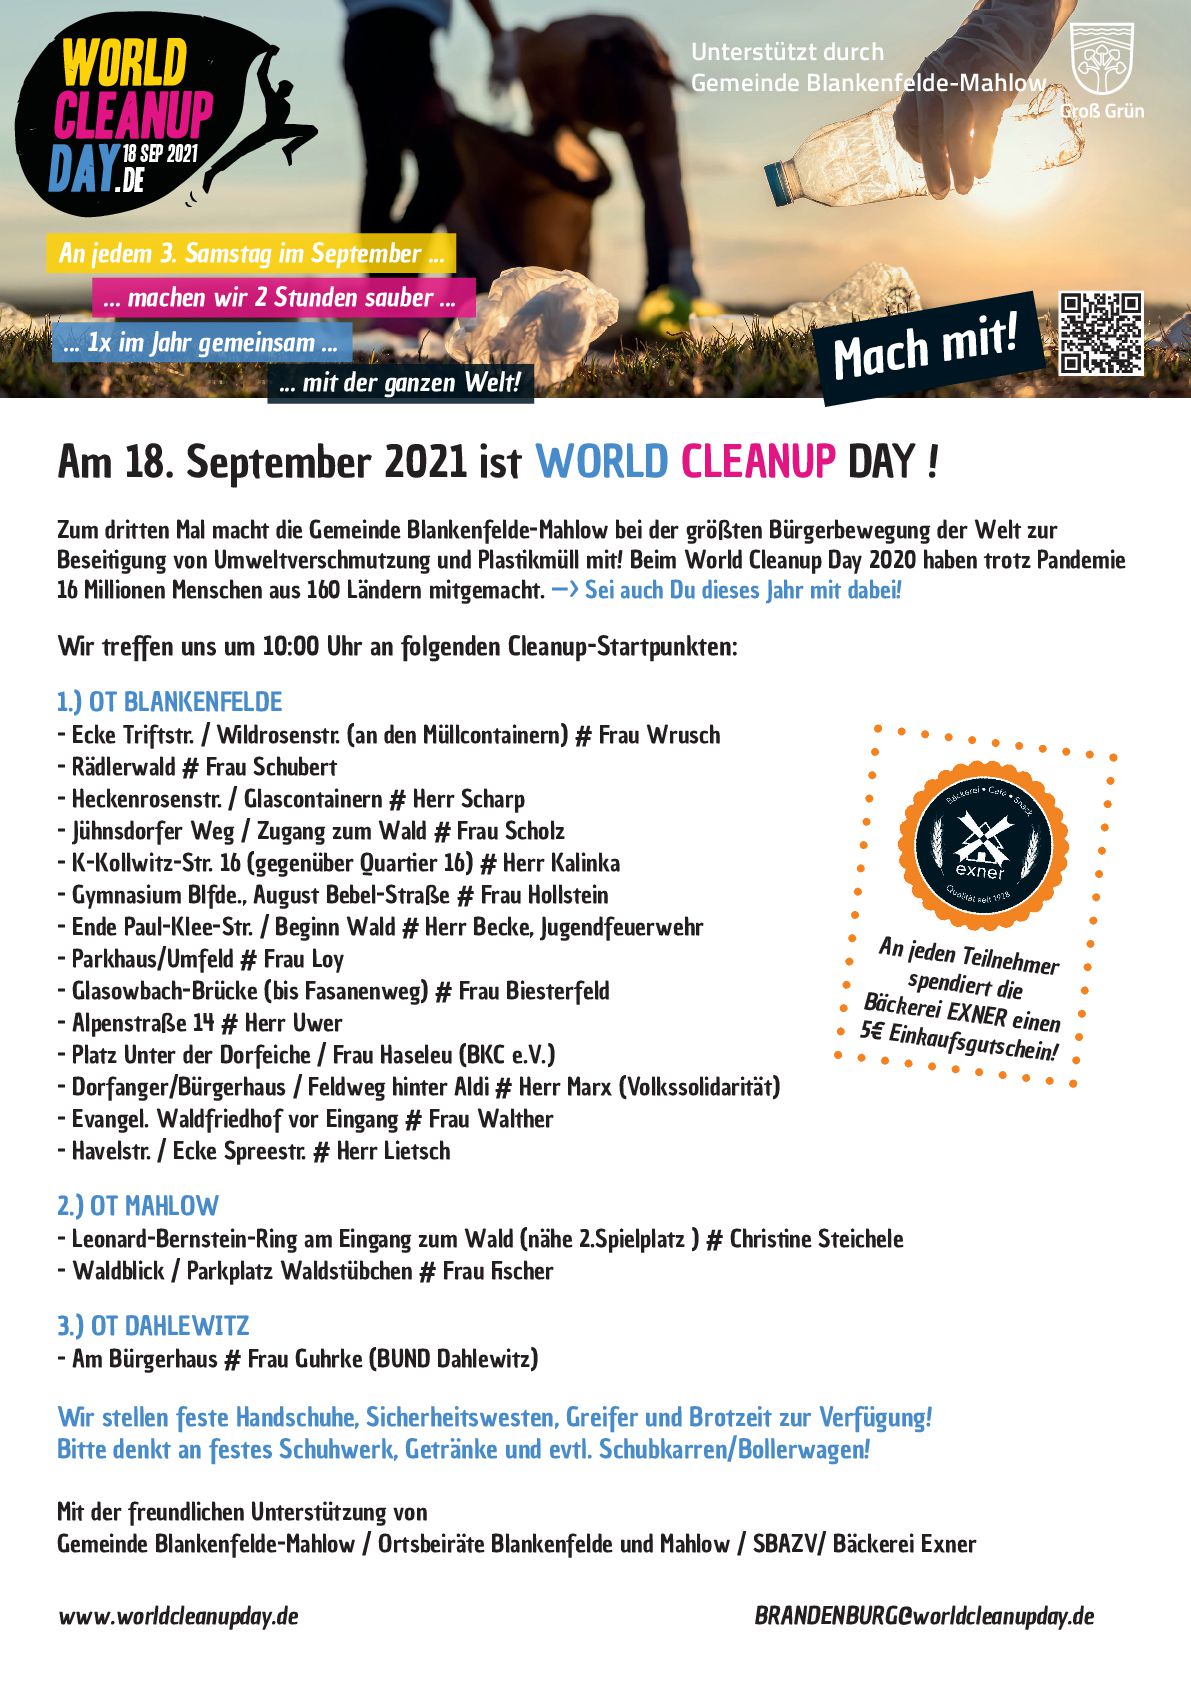 World Cleanup Day in Blankenfelde-Mahlow/OT Blankenfelde XI (Brandenburg)